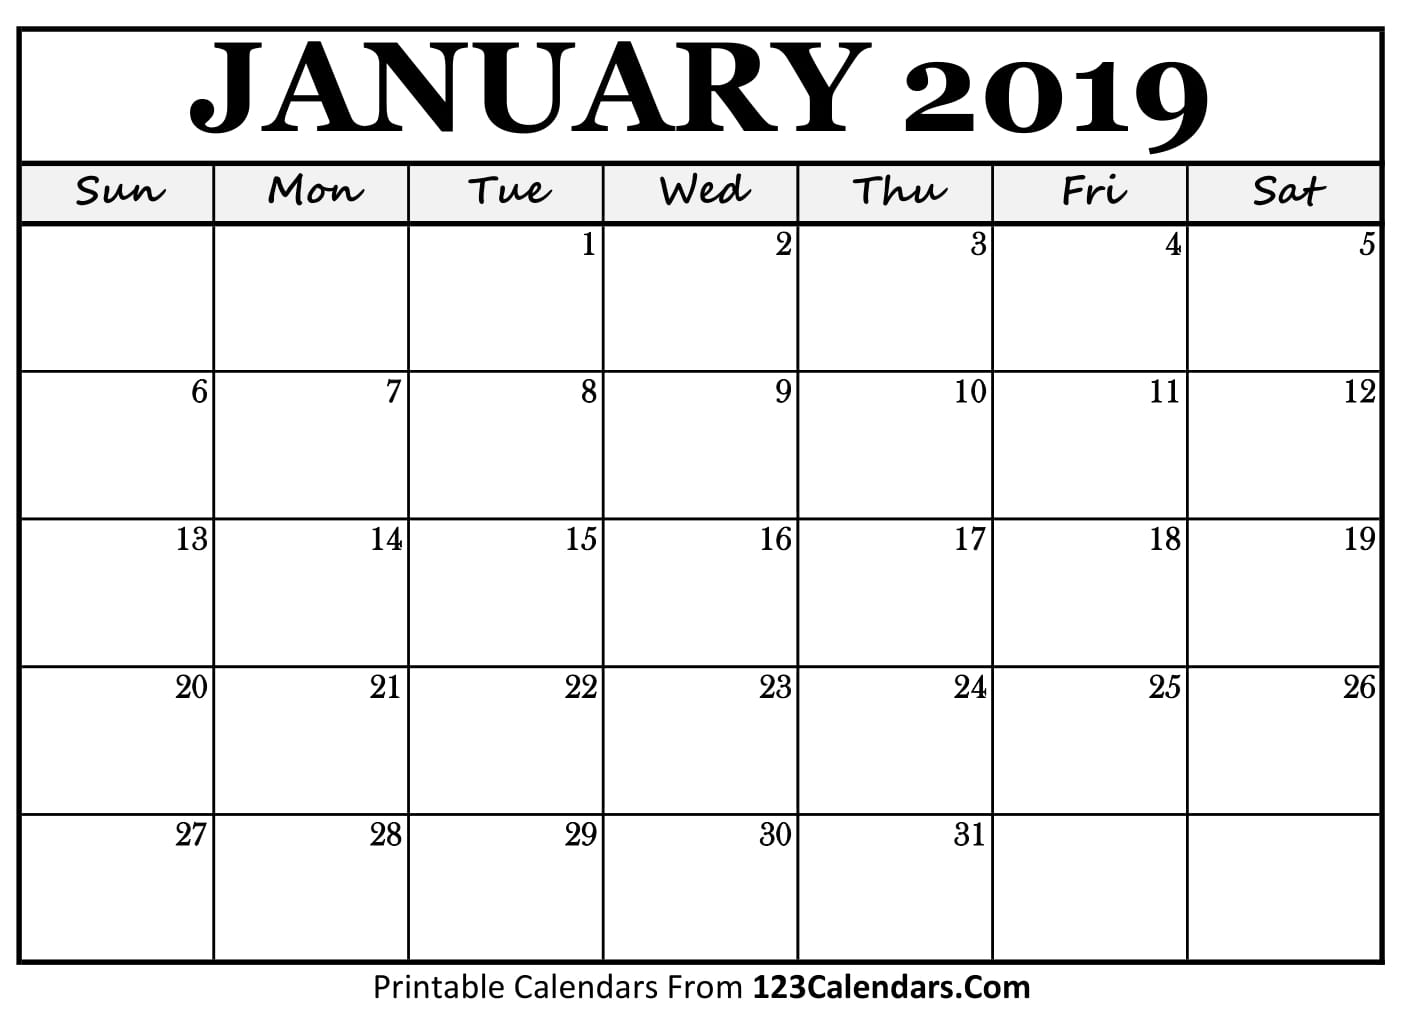 Free Printable Calendar | 123Calendars.com